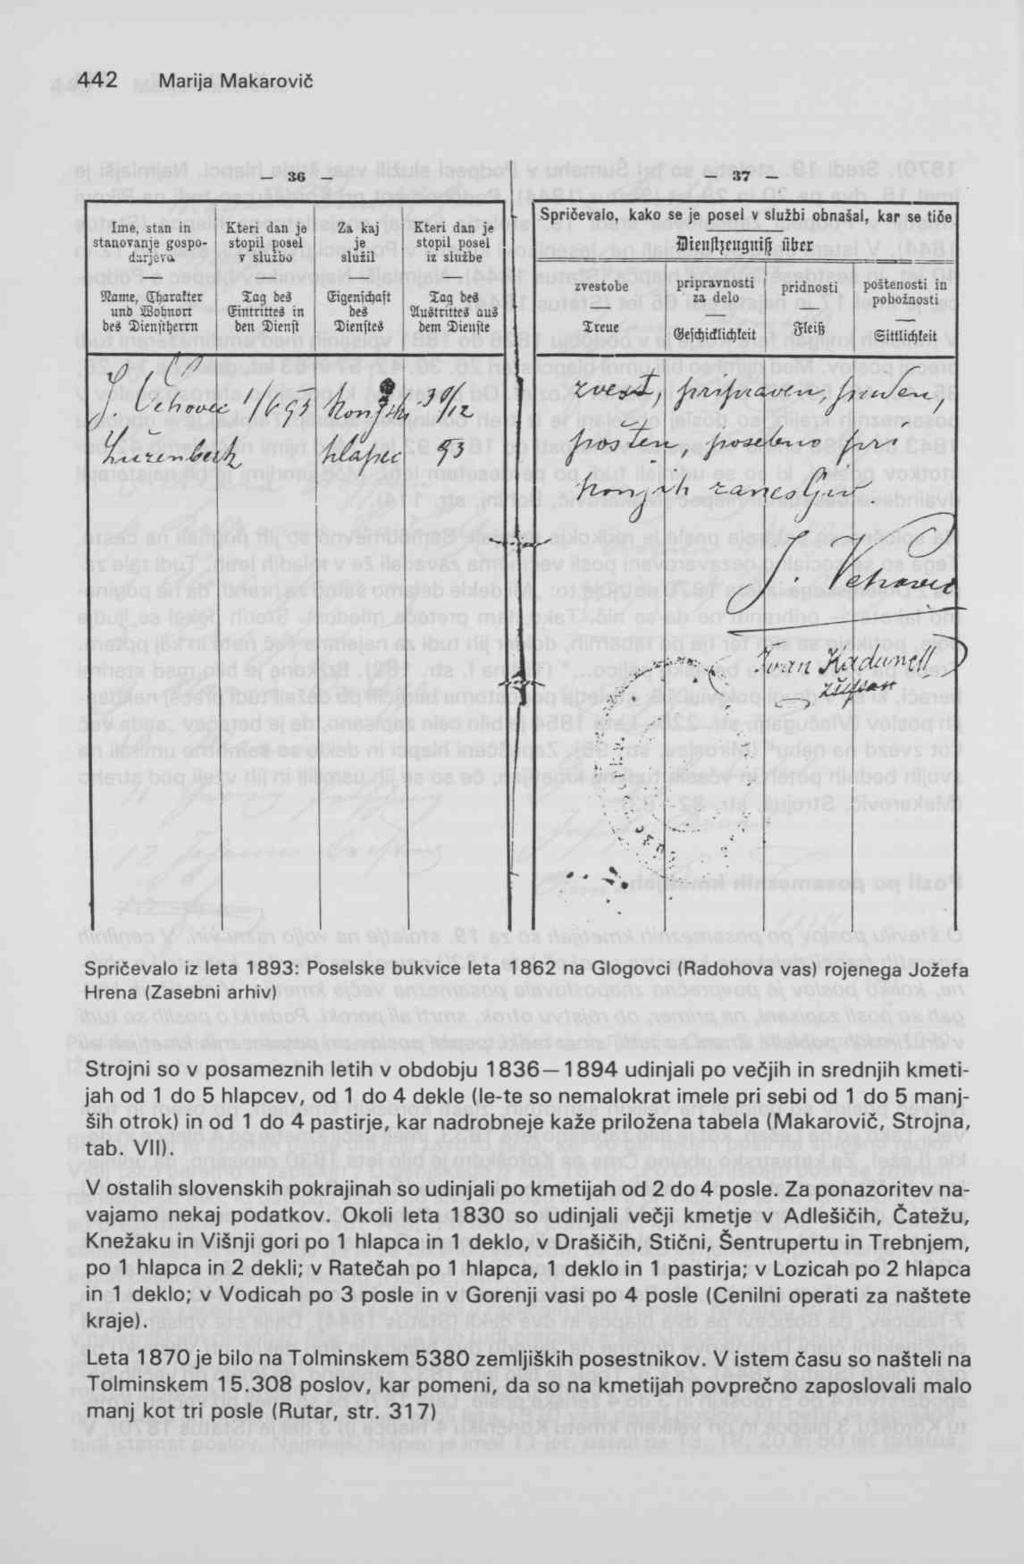 Spričevalo iz leta 1893: Poselske bukvice leta 1862 na Glogovci (Radohova vas) rojenega Jožefa Hrena (Zasebni arhiv) Strojni so v posameznih letih v obdobju 1836 1894 udinjali po večjih in srednjih